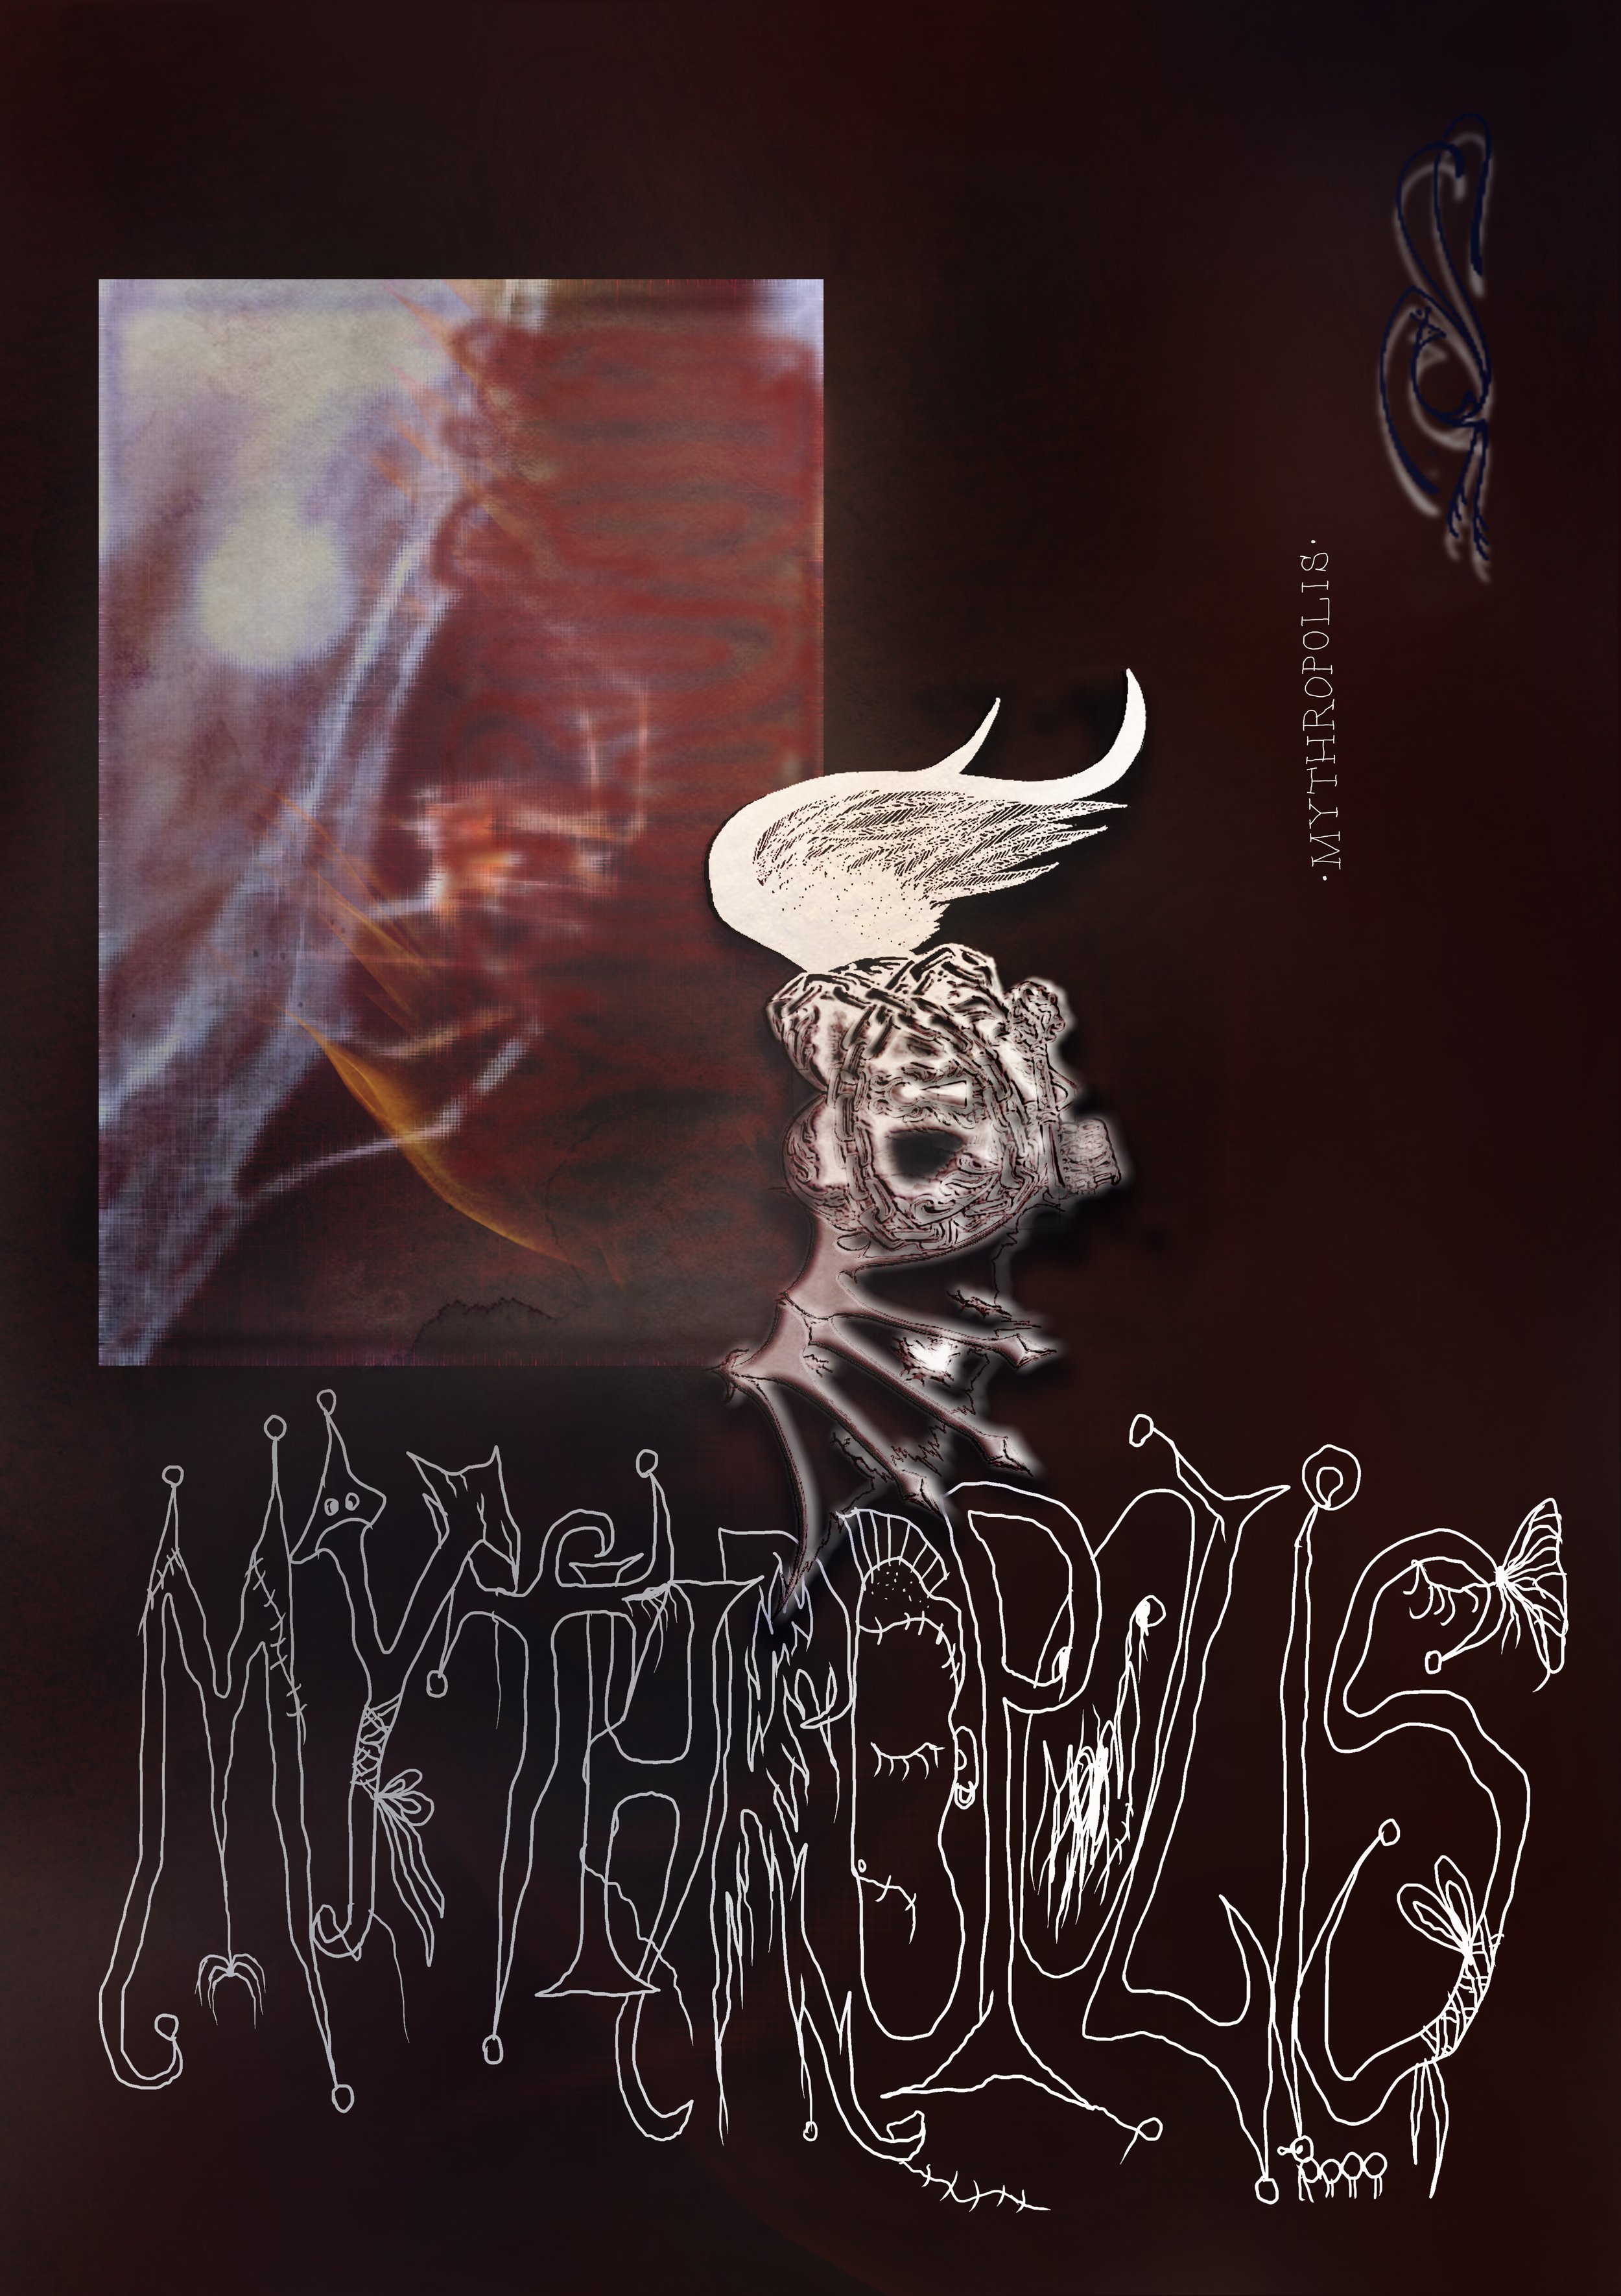 Mythropolis_AM180 Gallery_Invitation.jpg